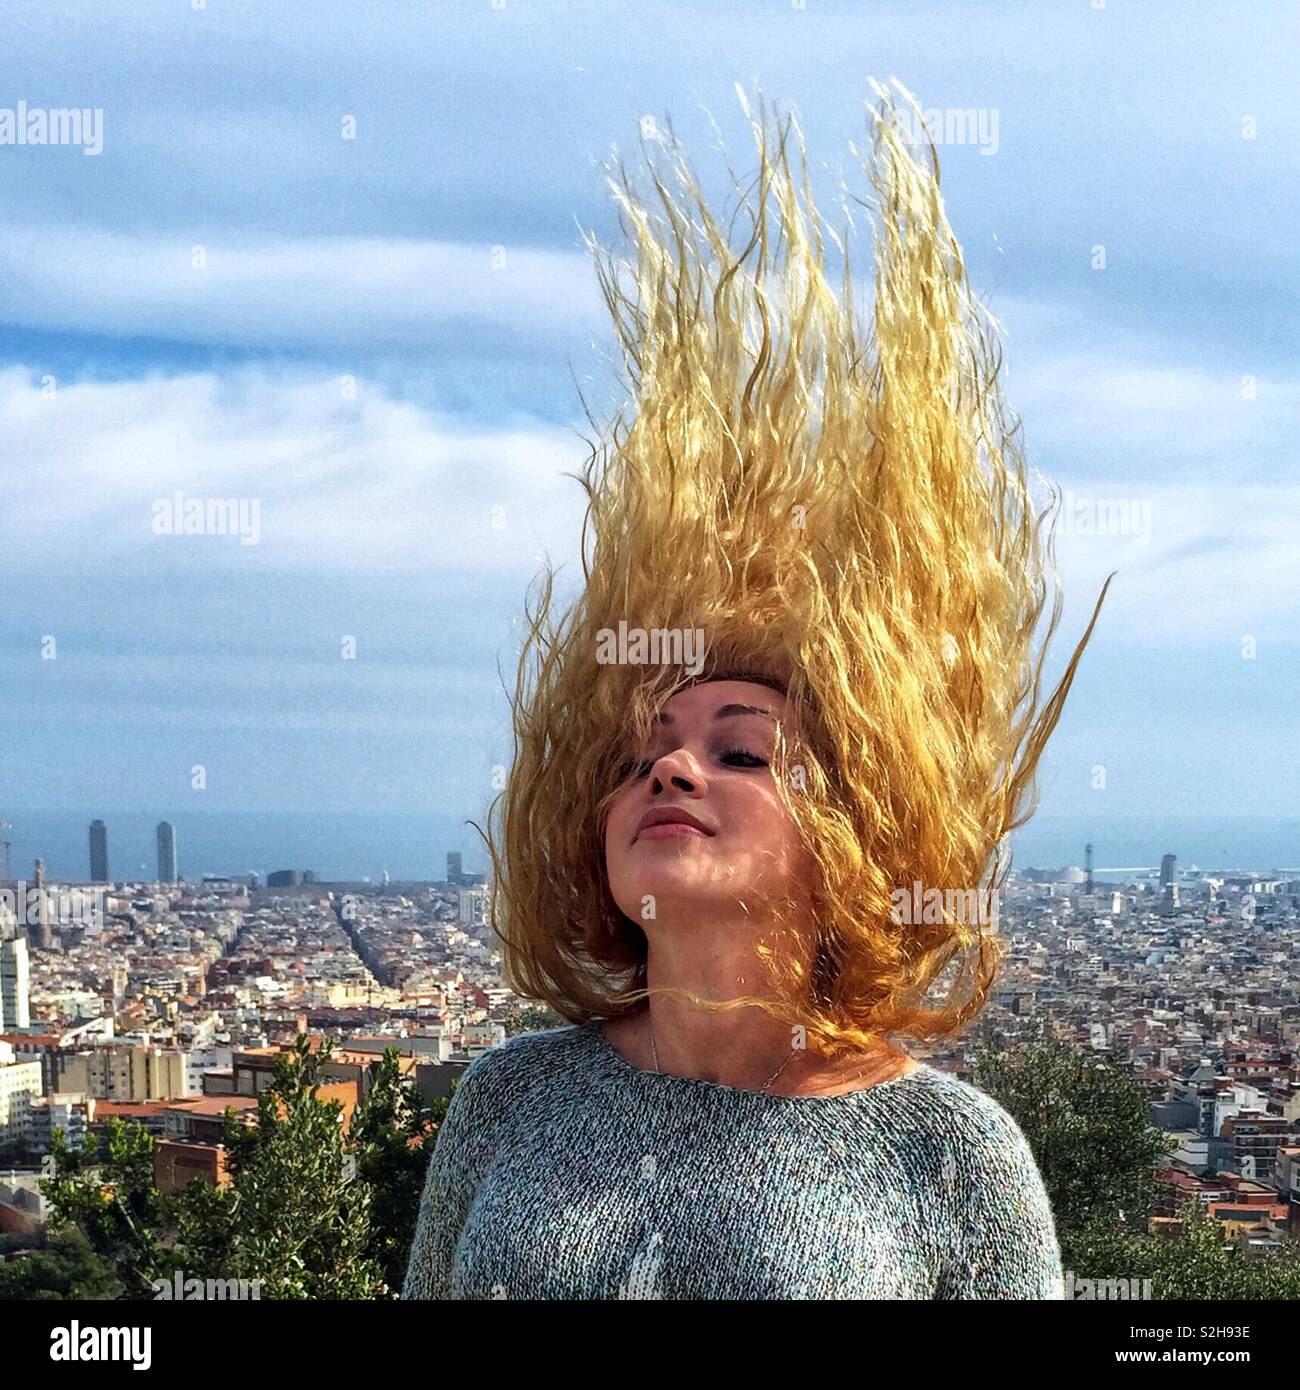 Ritratto di una ragazza bionda con lunghi capelli ricci che il vento è sventolata. Essa sorge su una collina al di sotto della città e il mare è visibile. Foto Stock